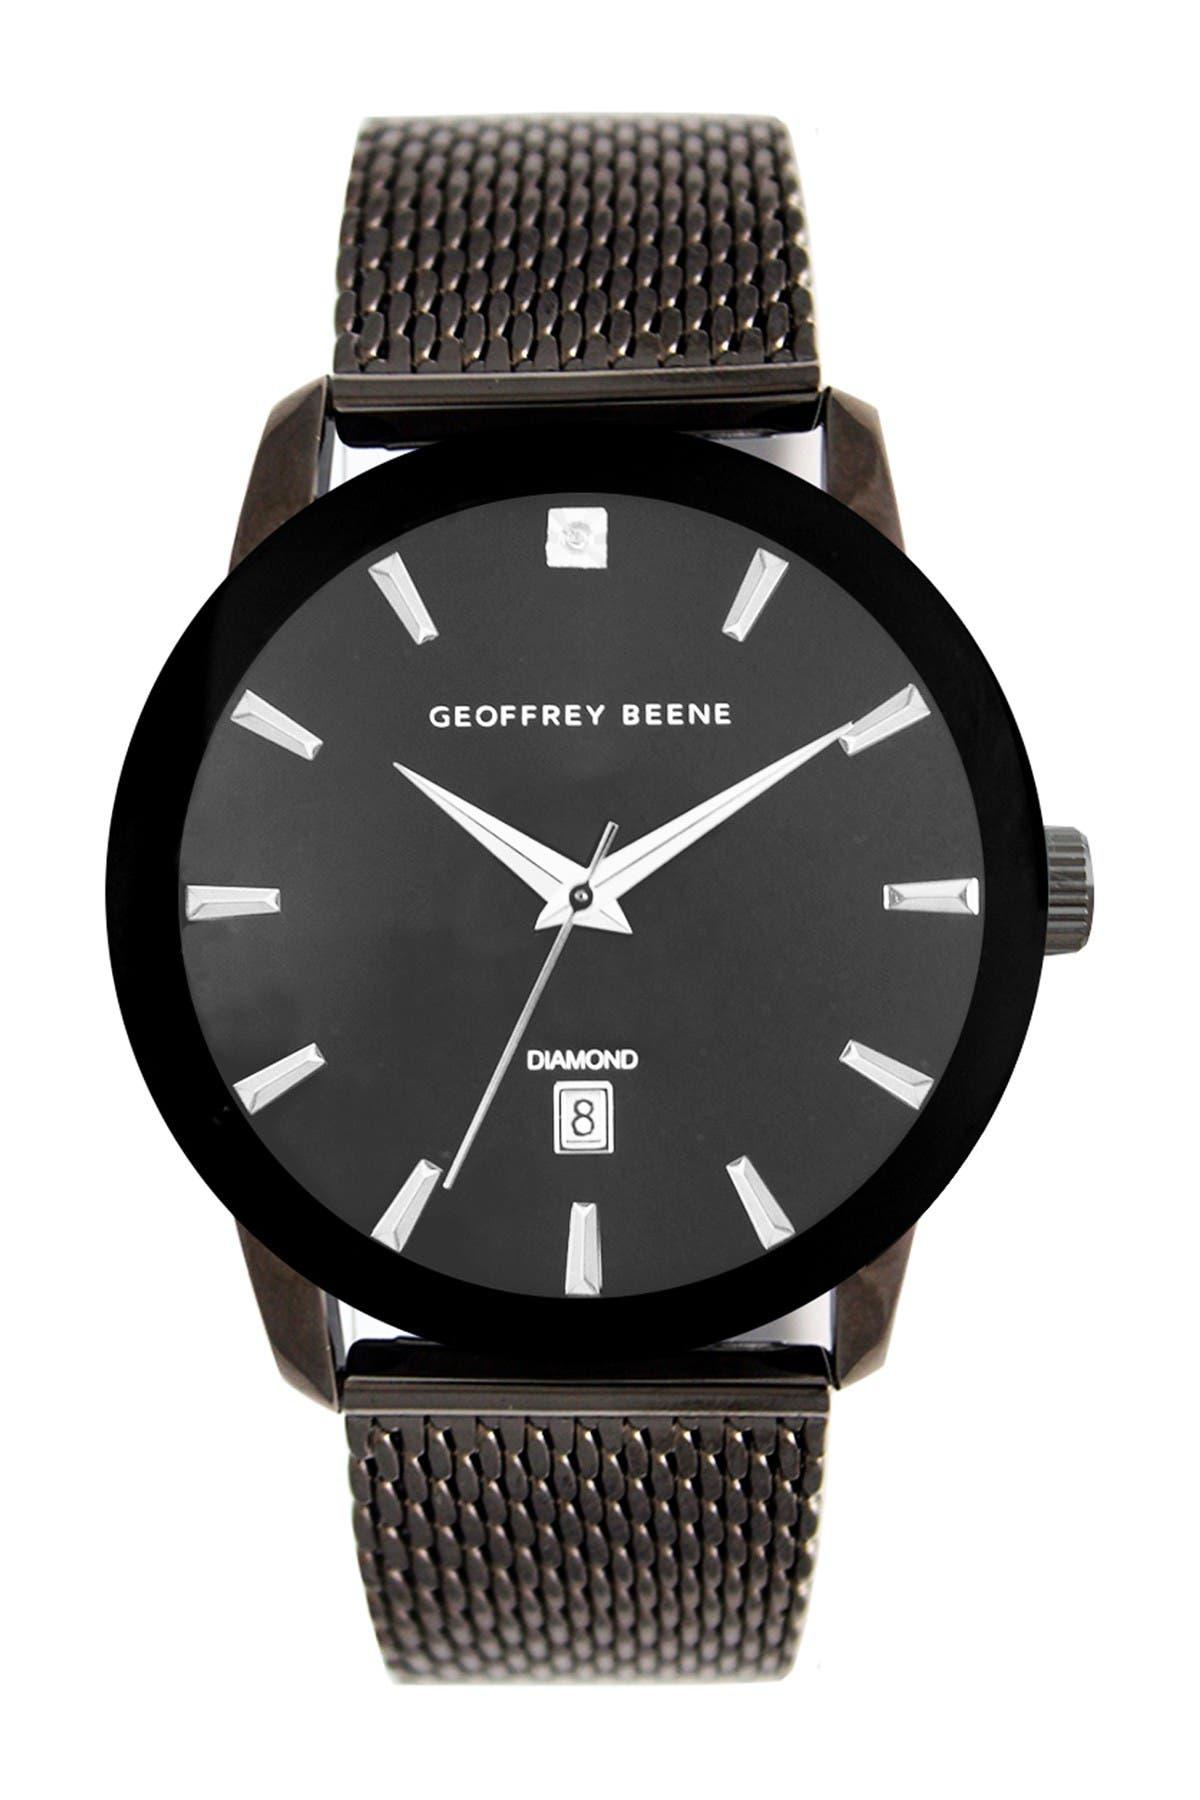 Часовая 38. Geoffrey Beene часы мужские. Часы Geoffrey Beene gb8116gd. Geoffrey Beene часы. Часы Geoffrey Beene цена.